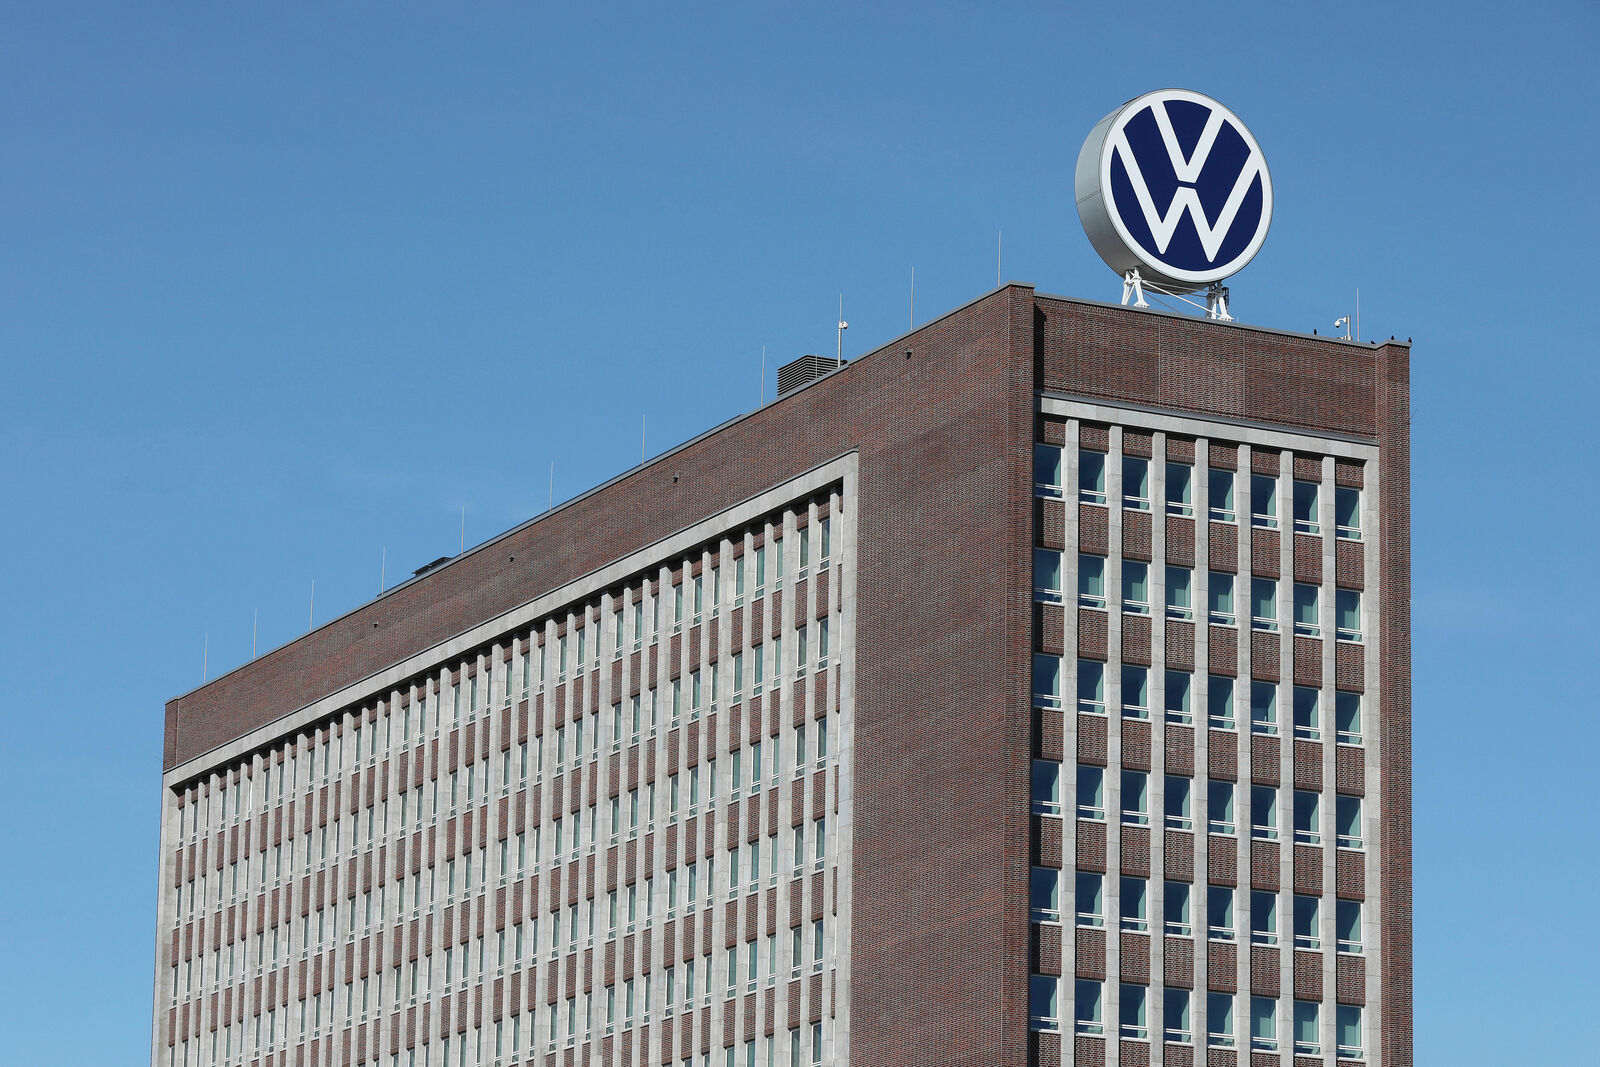 Markenhochaus (Brand Tower) - new Volkswagen logo